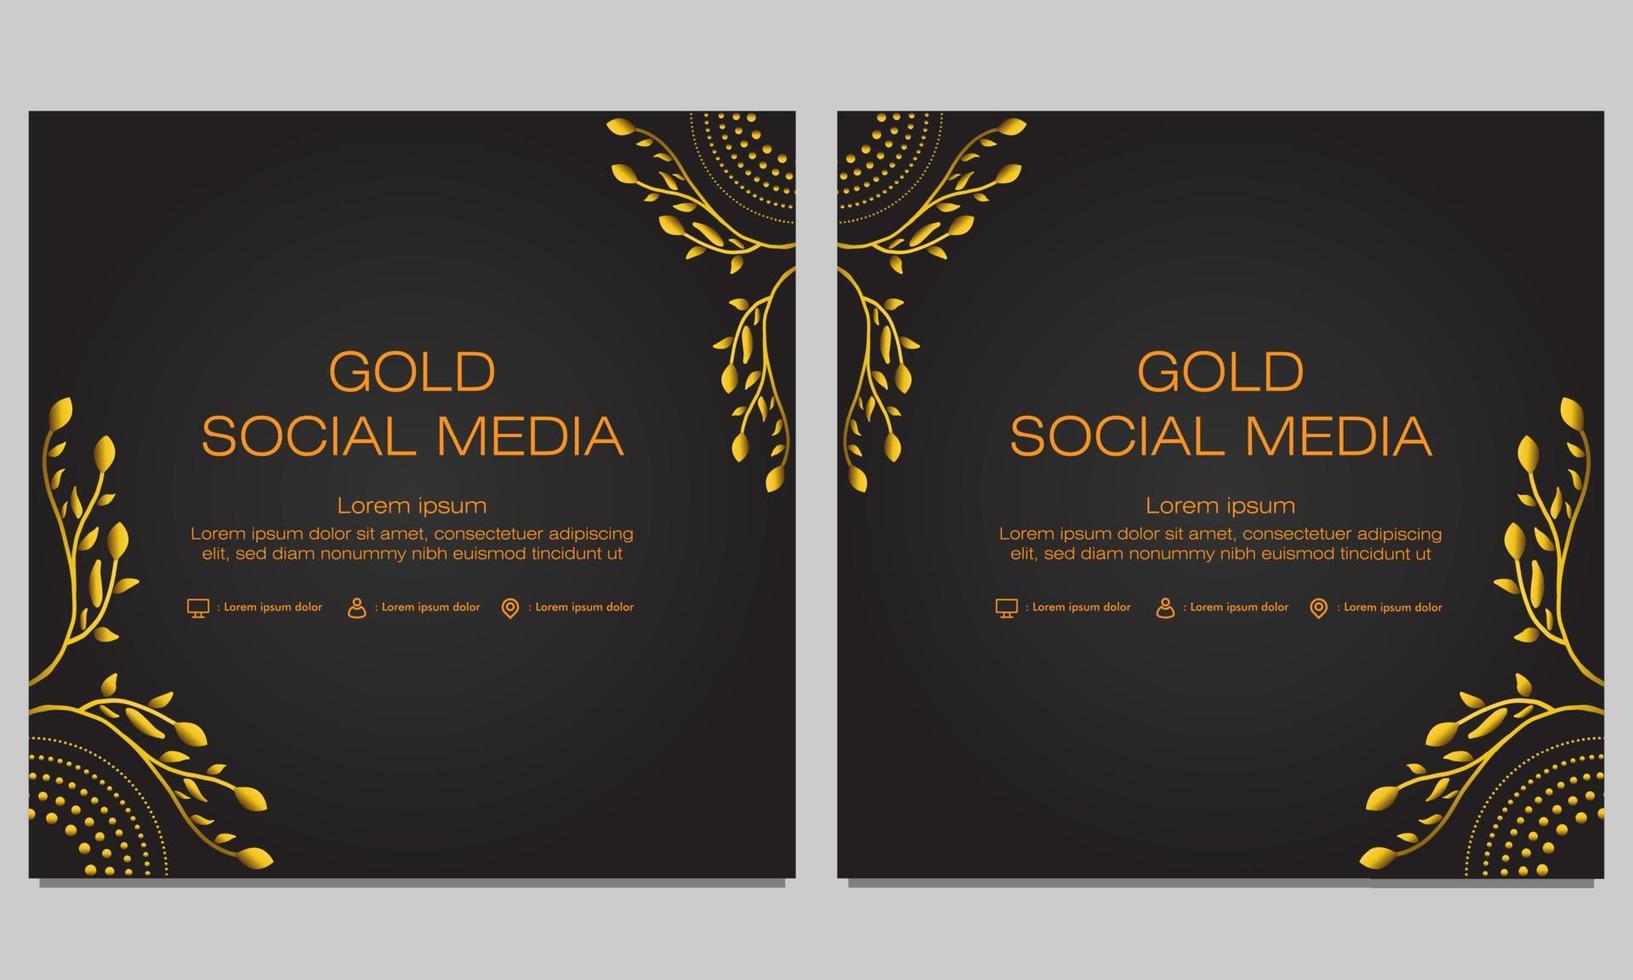 gouden bloemen social media postsjabloon vector